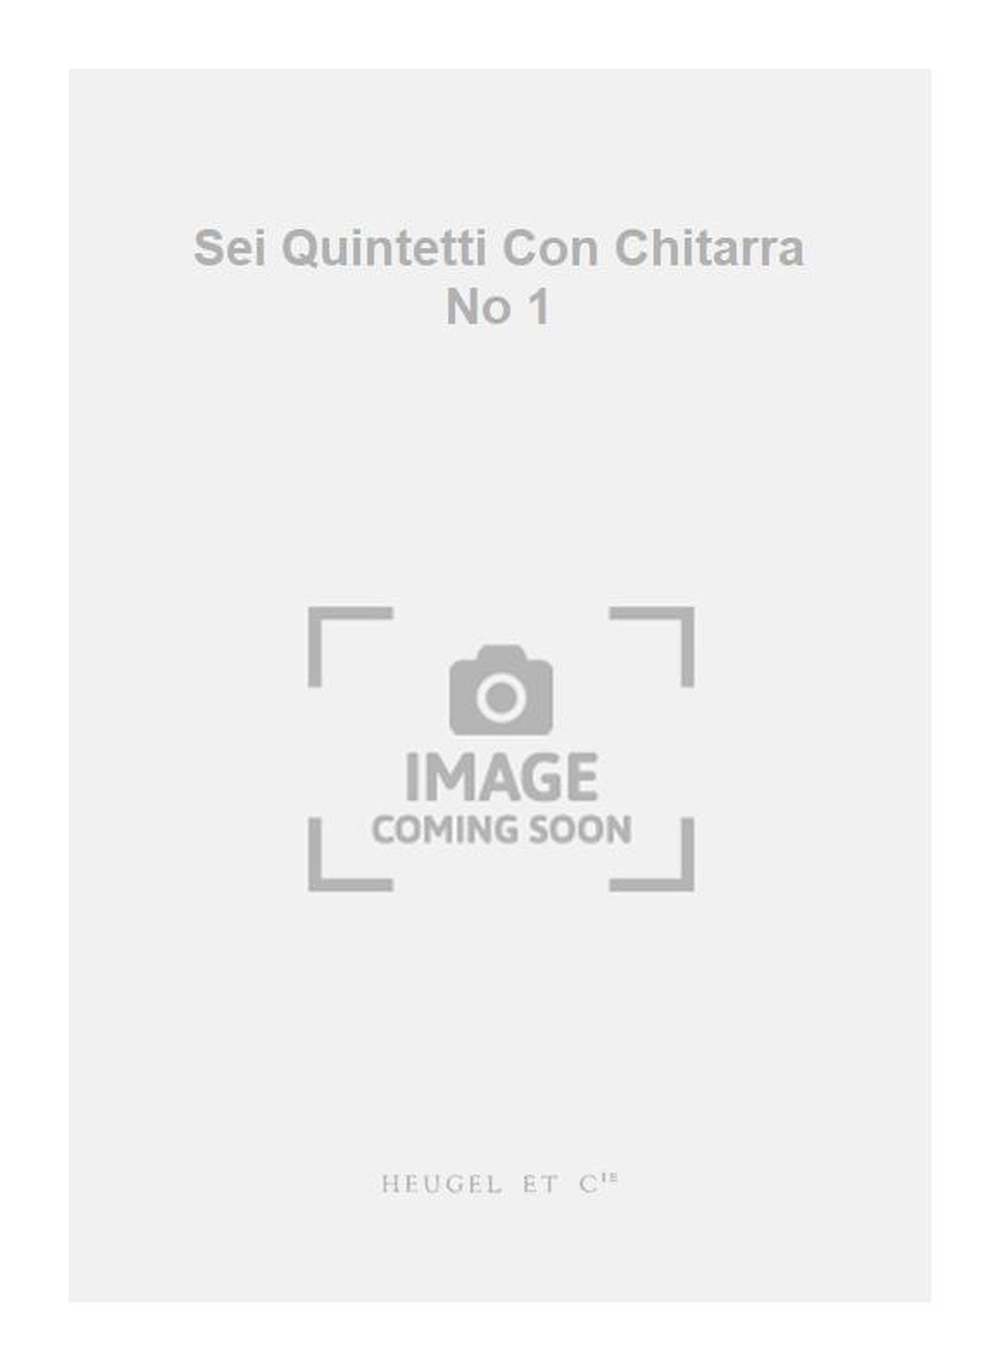 Luigi Boccherini: Sei Quintetti Con Chitarra No 1